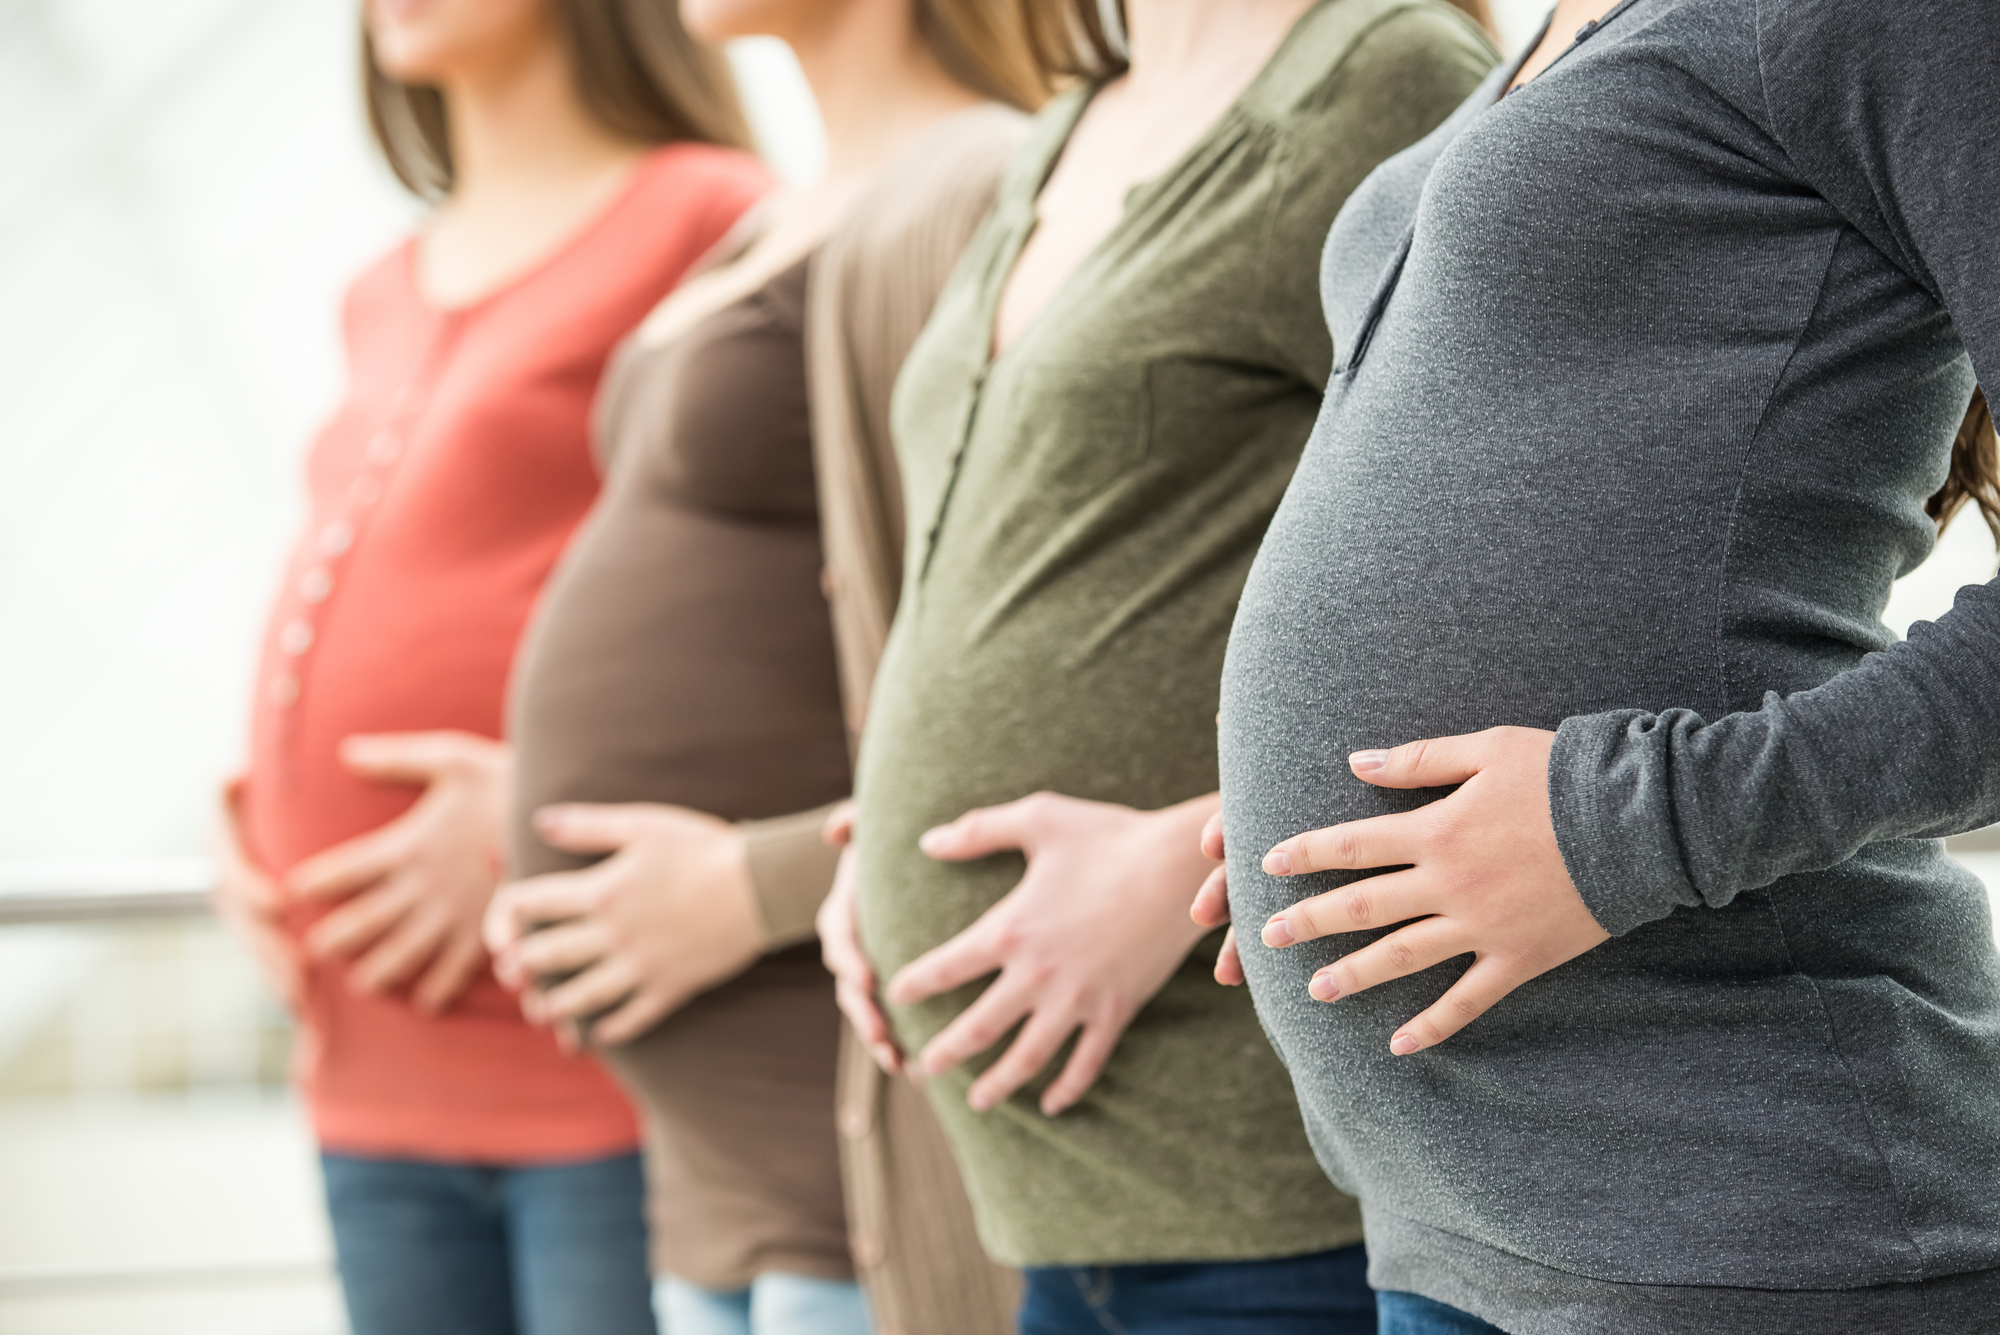 Novo estudo aponta que gravidez acelera o envelhecimento